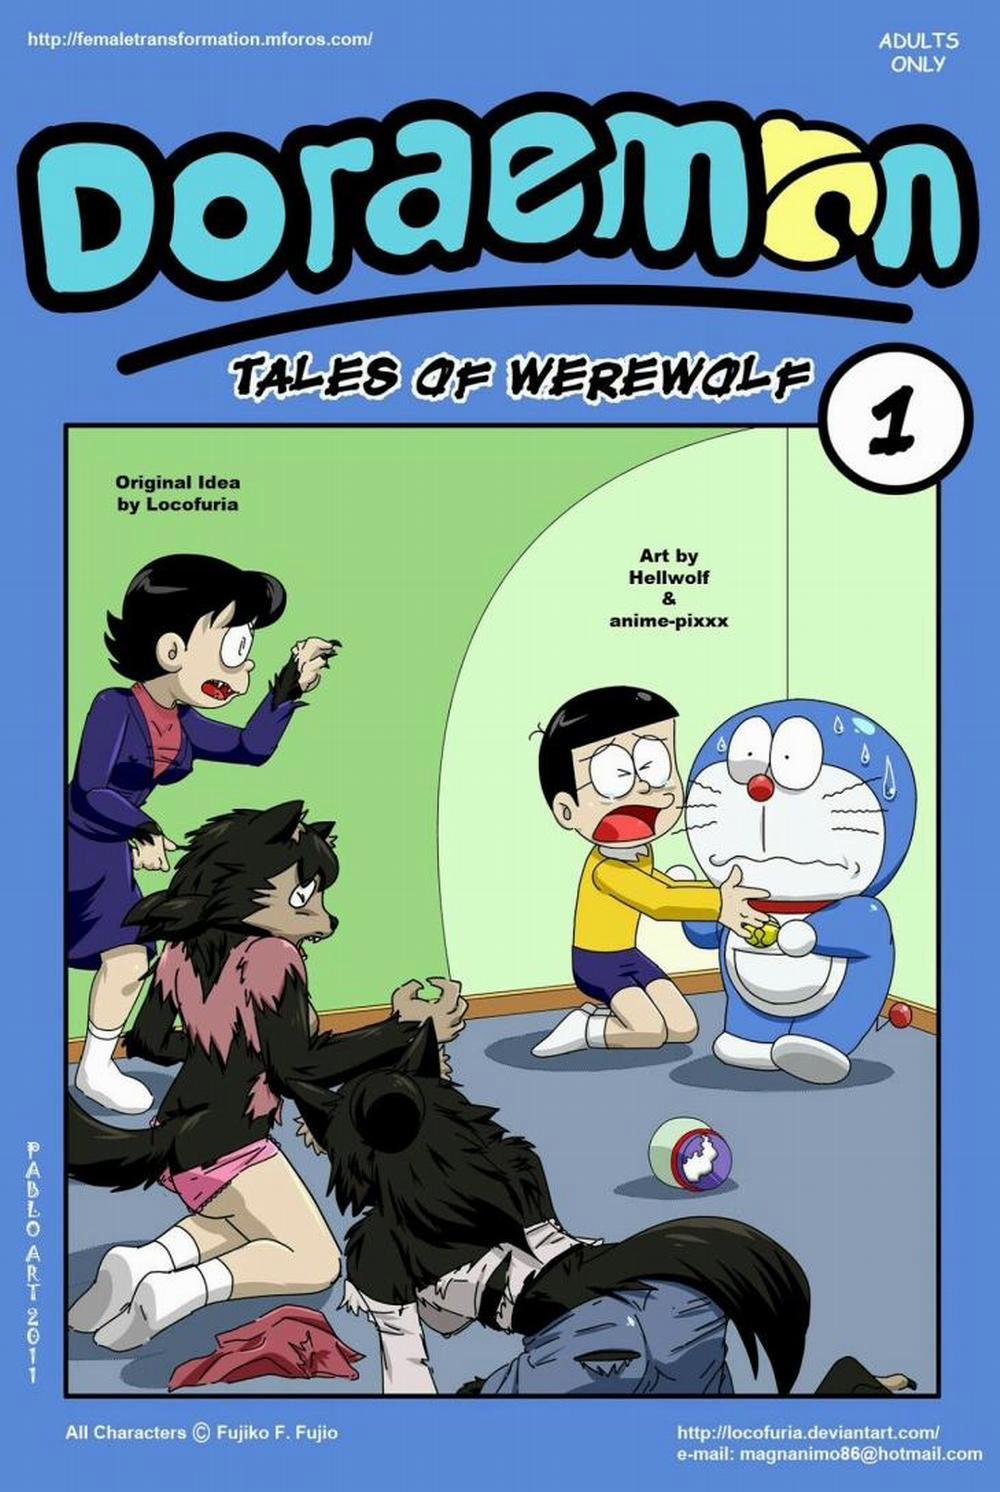 Tuyển Tập Doraemon Doujinshi 18+ Chương 19 Kem ch s i 1 Trang 1